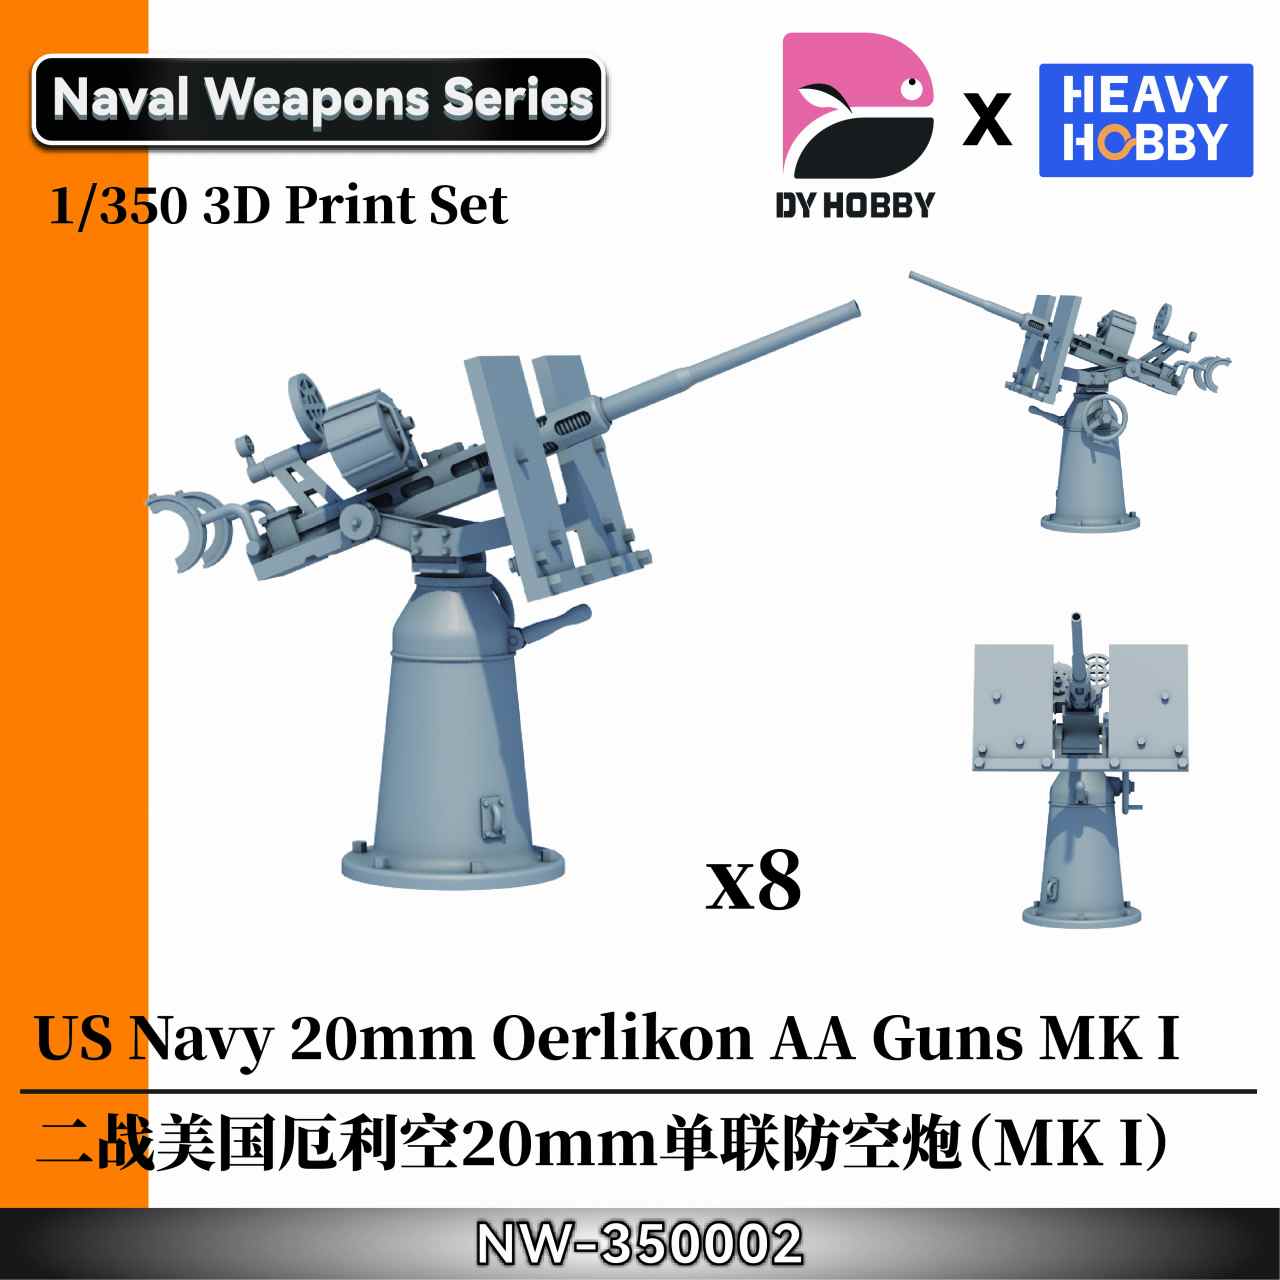 【新製品】NW-350002 1/350 WWII アメリカ海軍 エリコン 20mm 単装機関砲 (MK I)